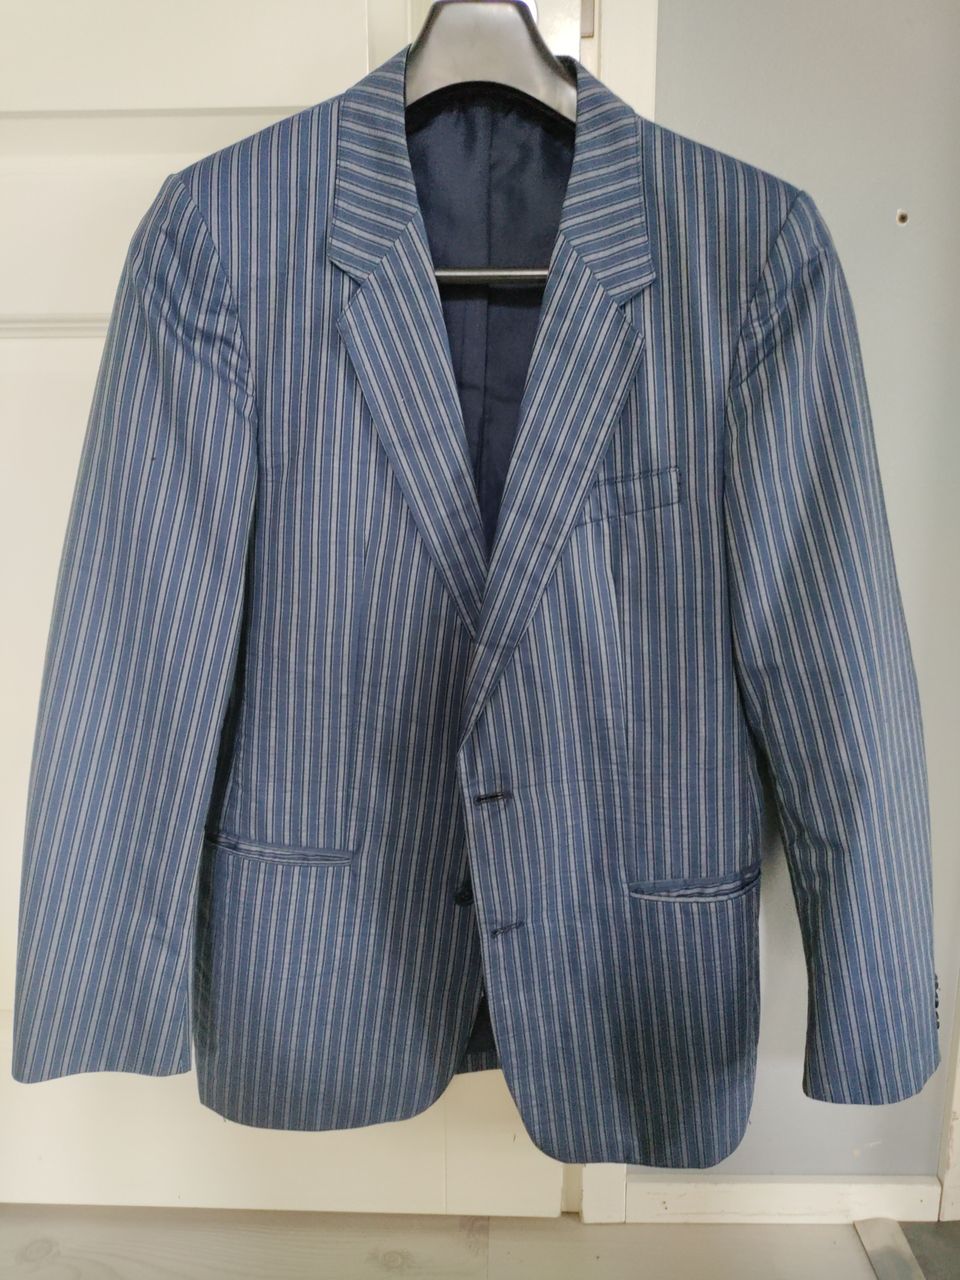 Myydään kuvanmukainen miesten puvun takki